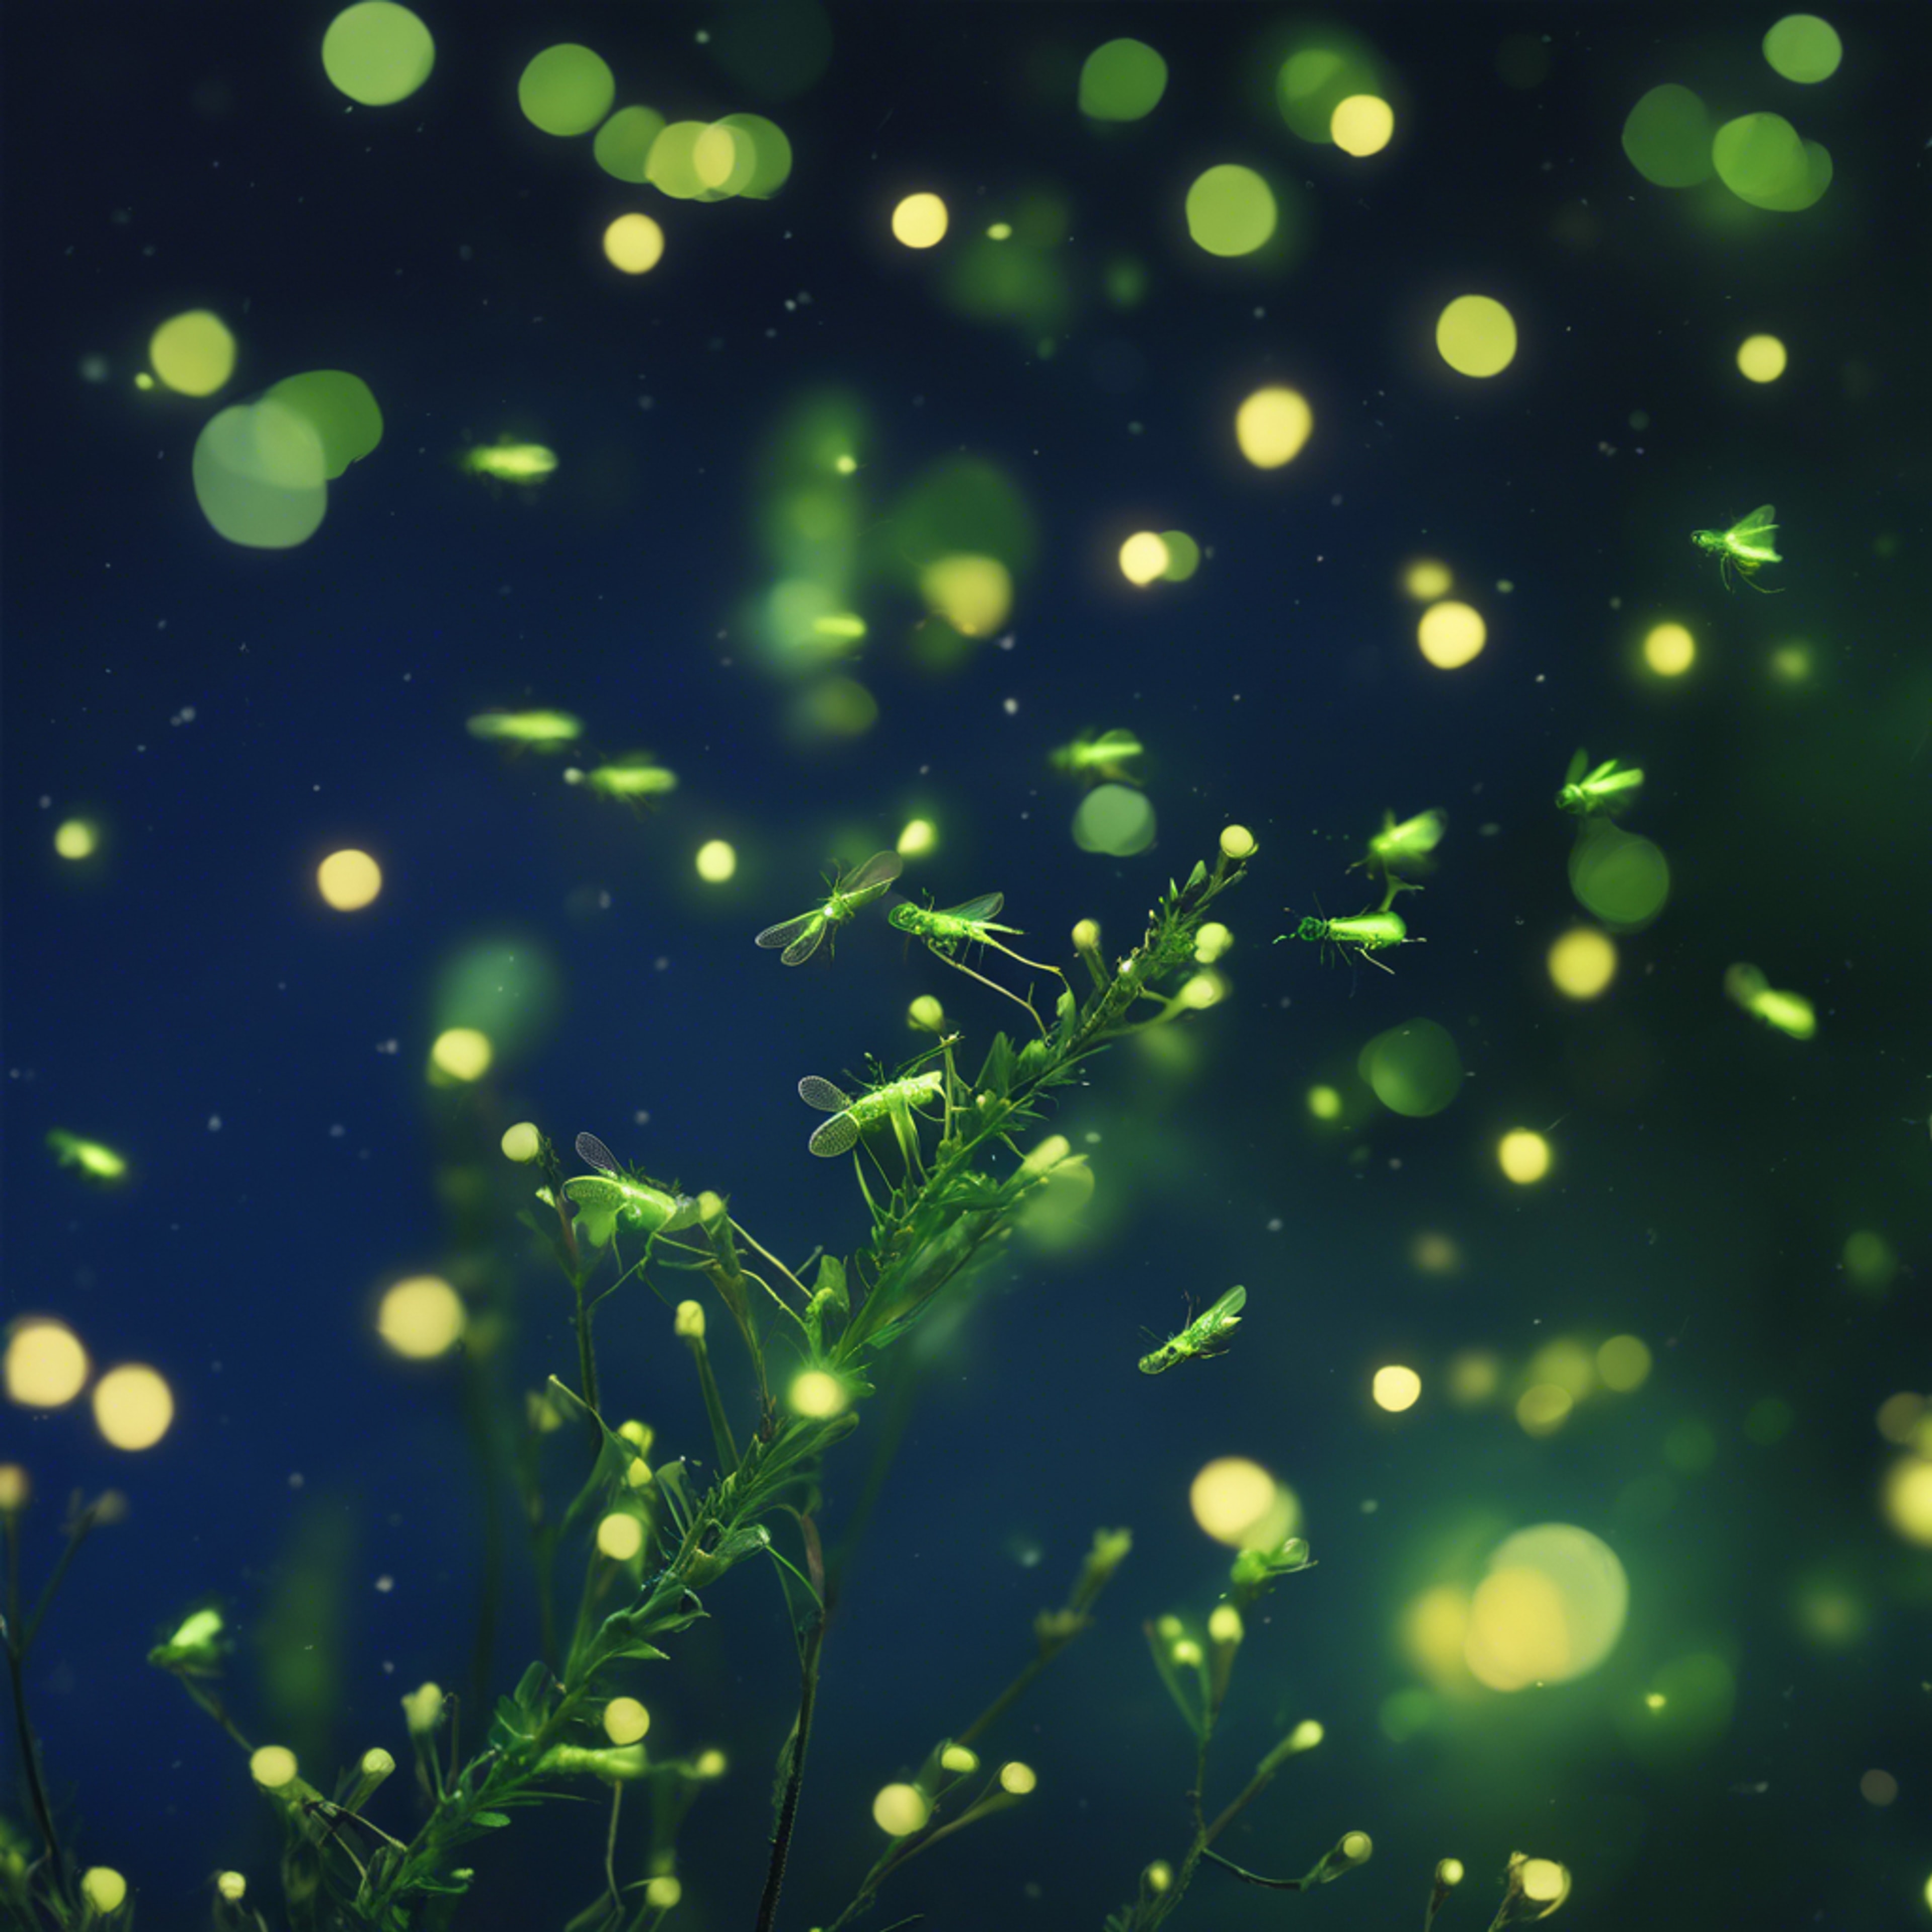 A myriad of emerald green fireflies flickering against a deep twilight blue sky.壁紙[603476c68fd84f259627]